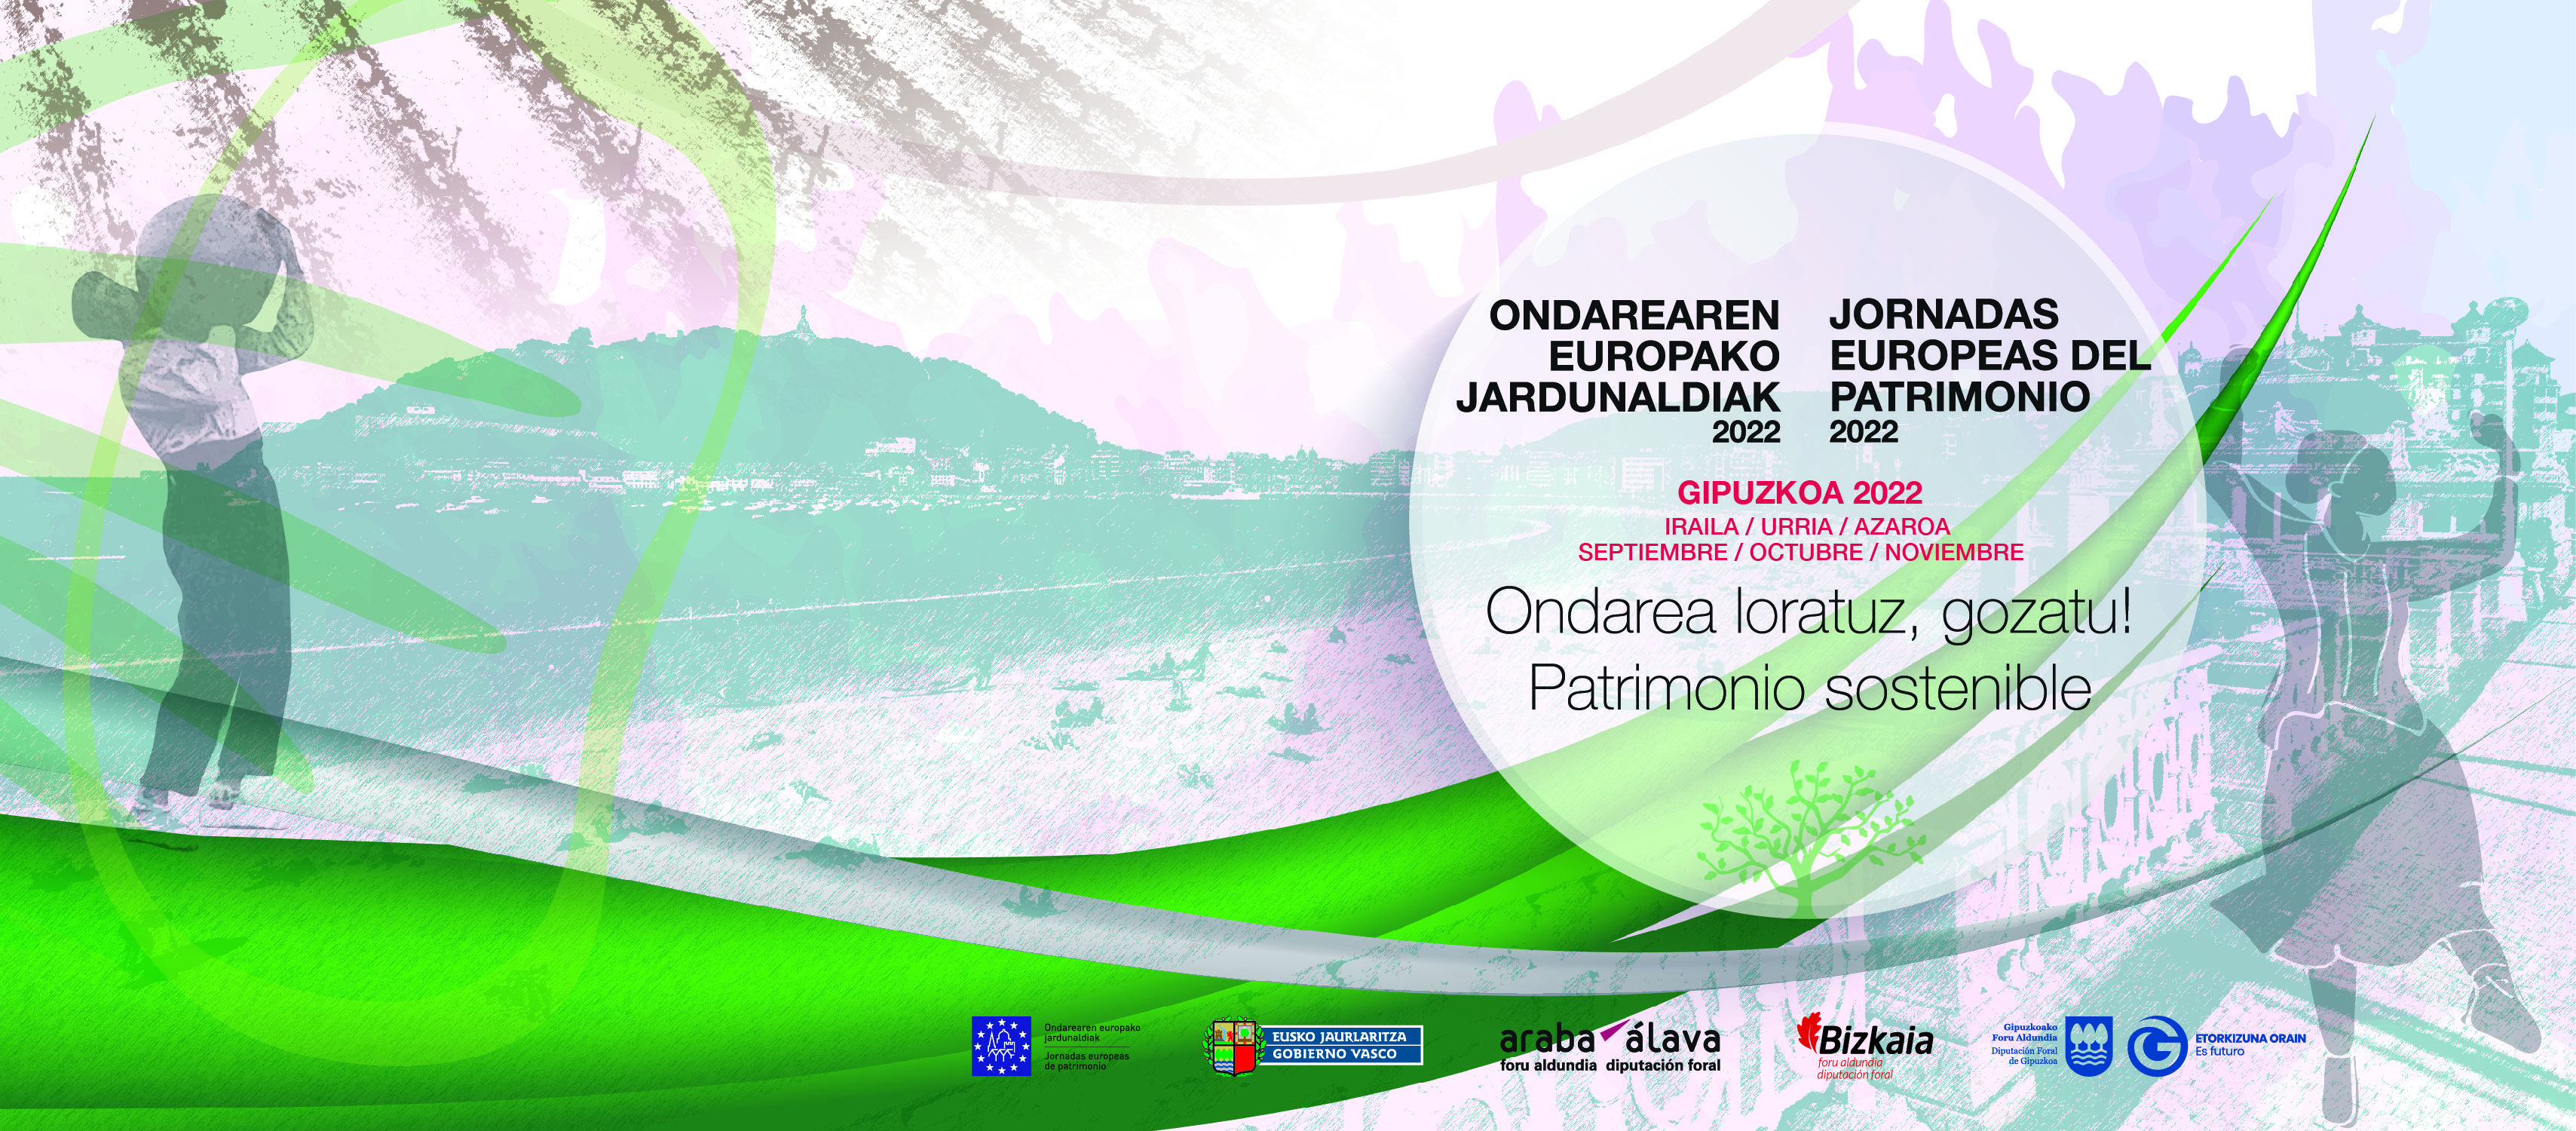 Más de 122 eventos culturales para disfrutar del patrimonio sostenible en “Ondarea loratuz, gozatu! Patrimonio sostenible